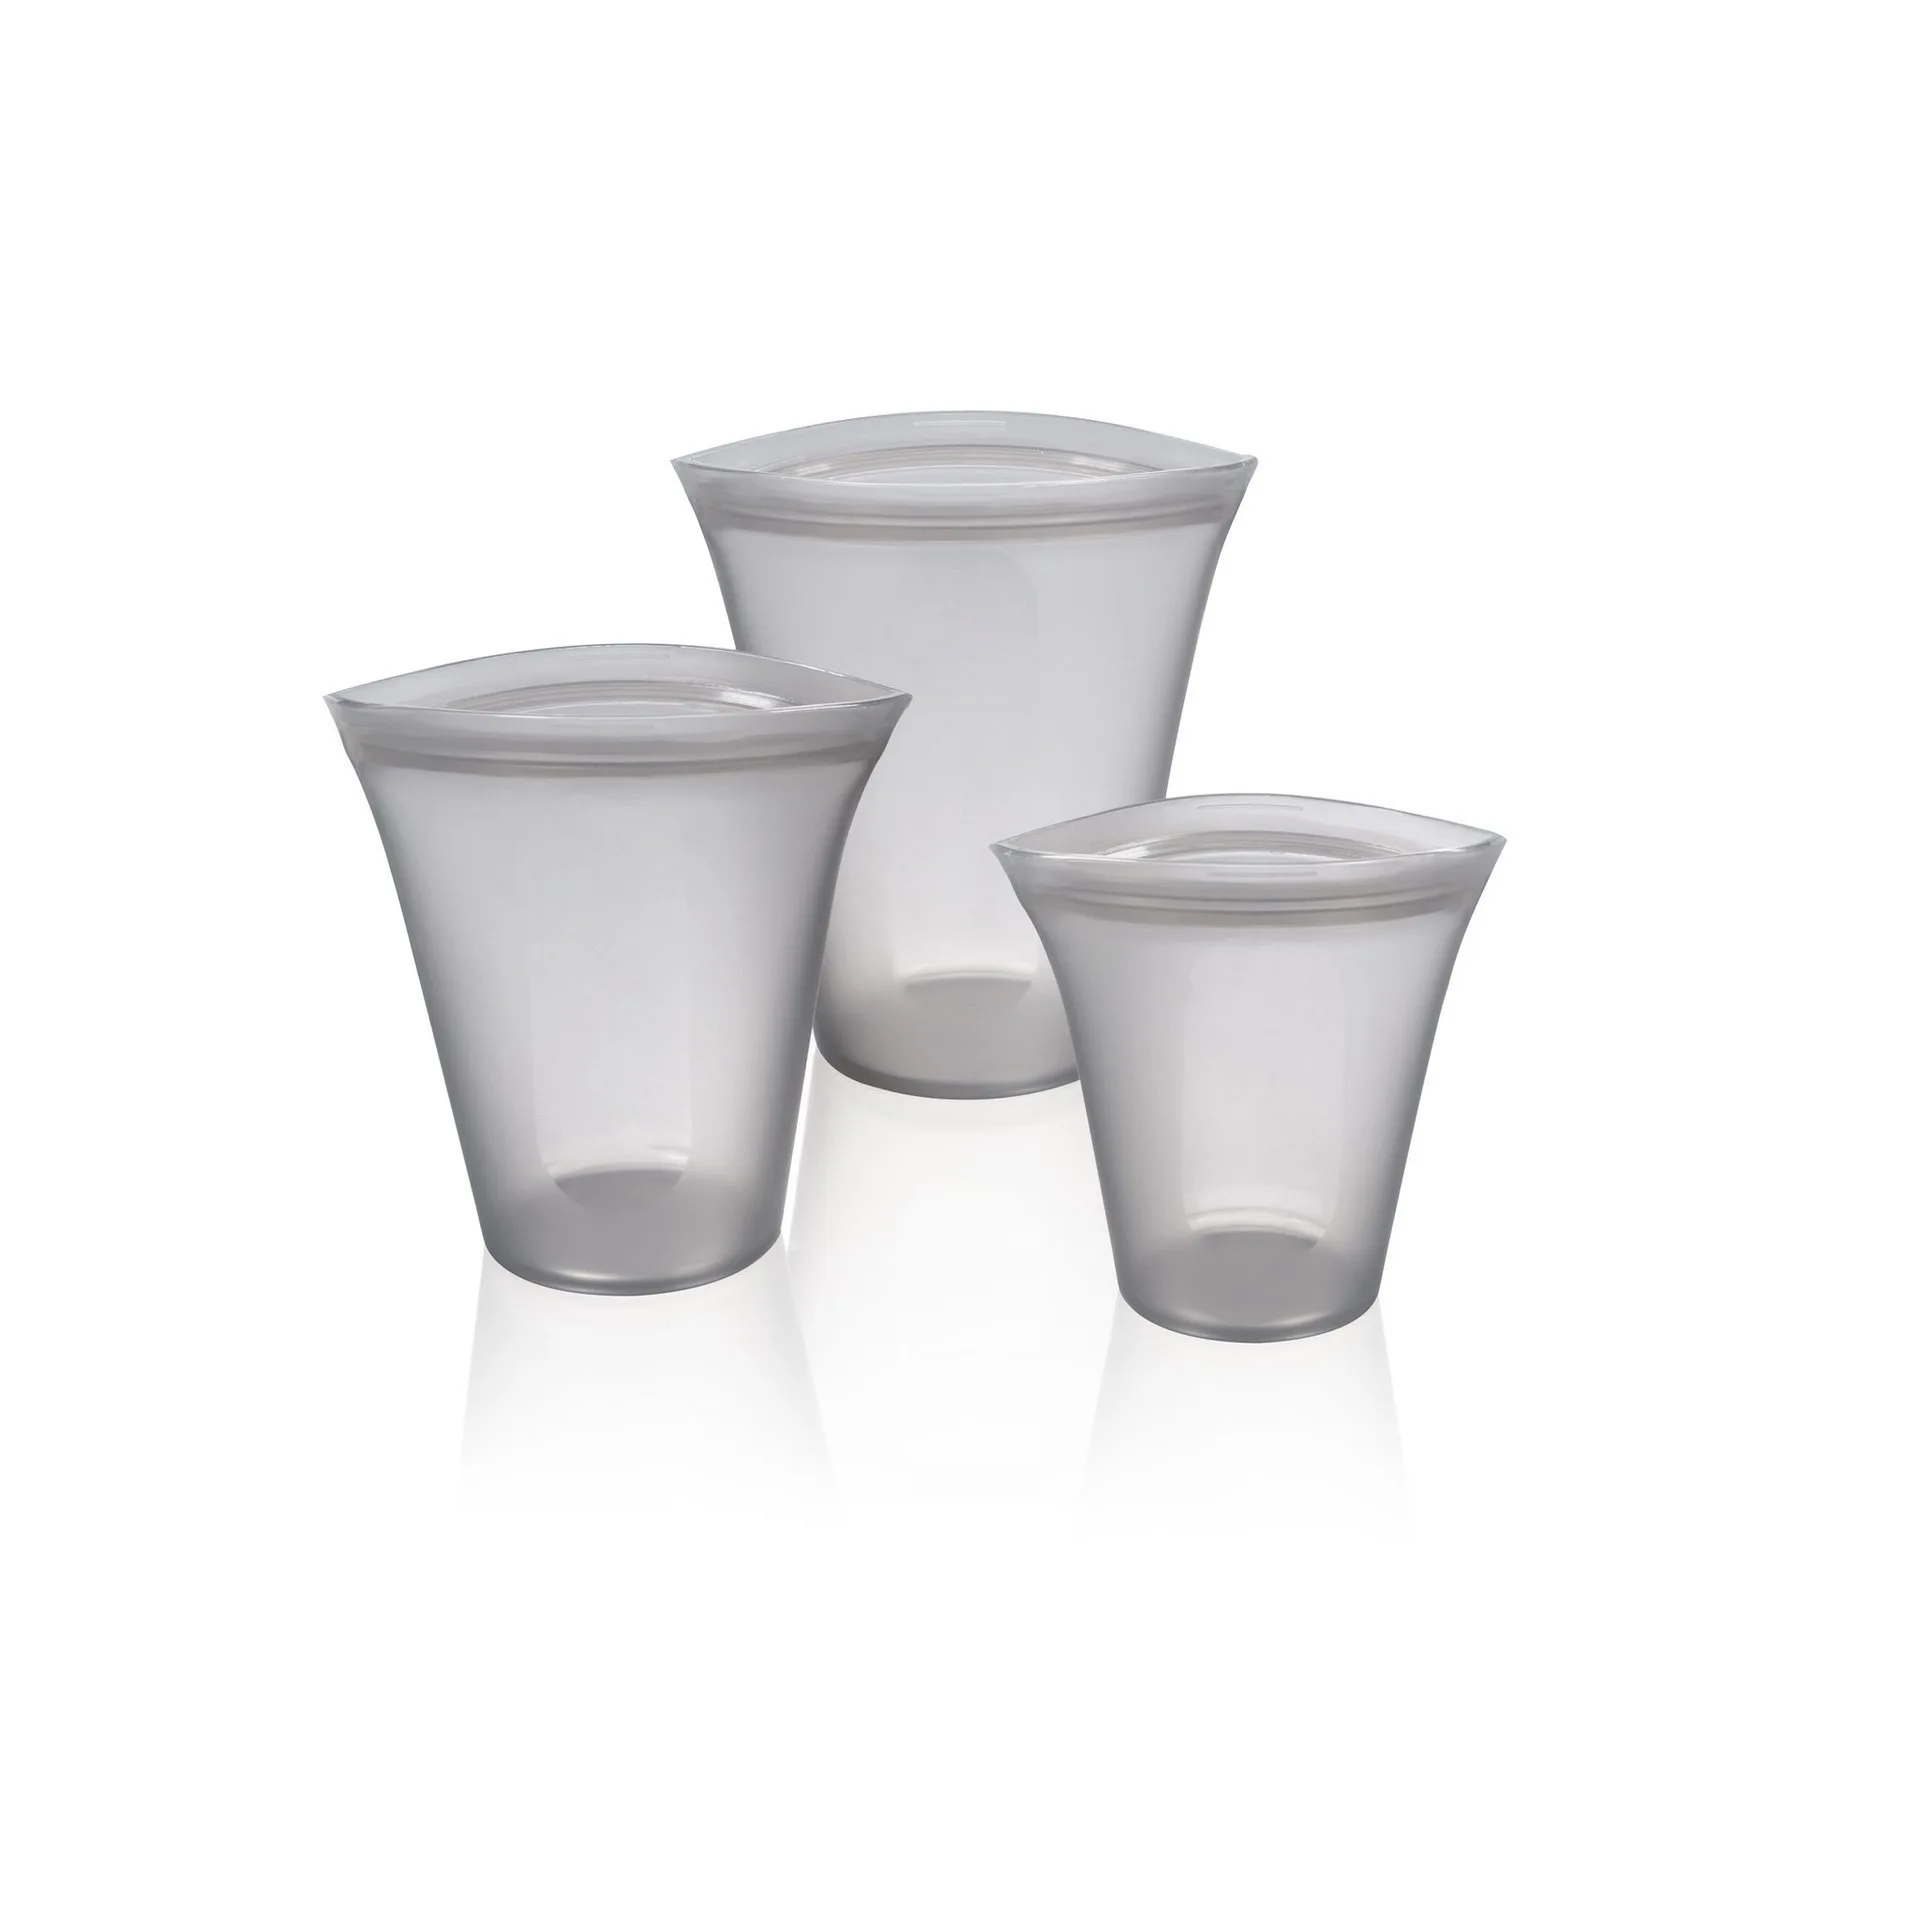 3 шт. 3 типа силиконовые герметичные контейнеры с замком-молнией для кухонного хранения, многоразовые оригинальные силиконовые чаши для хранения еды, чашки, сумки, набор - Цвет: 3 PCS Cups